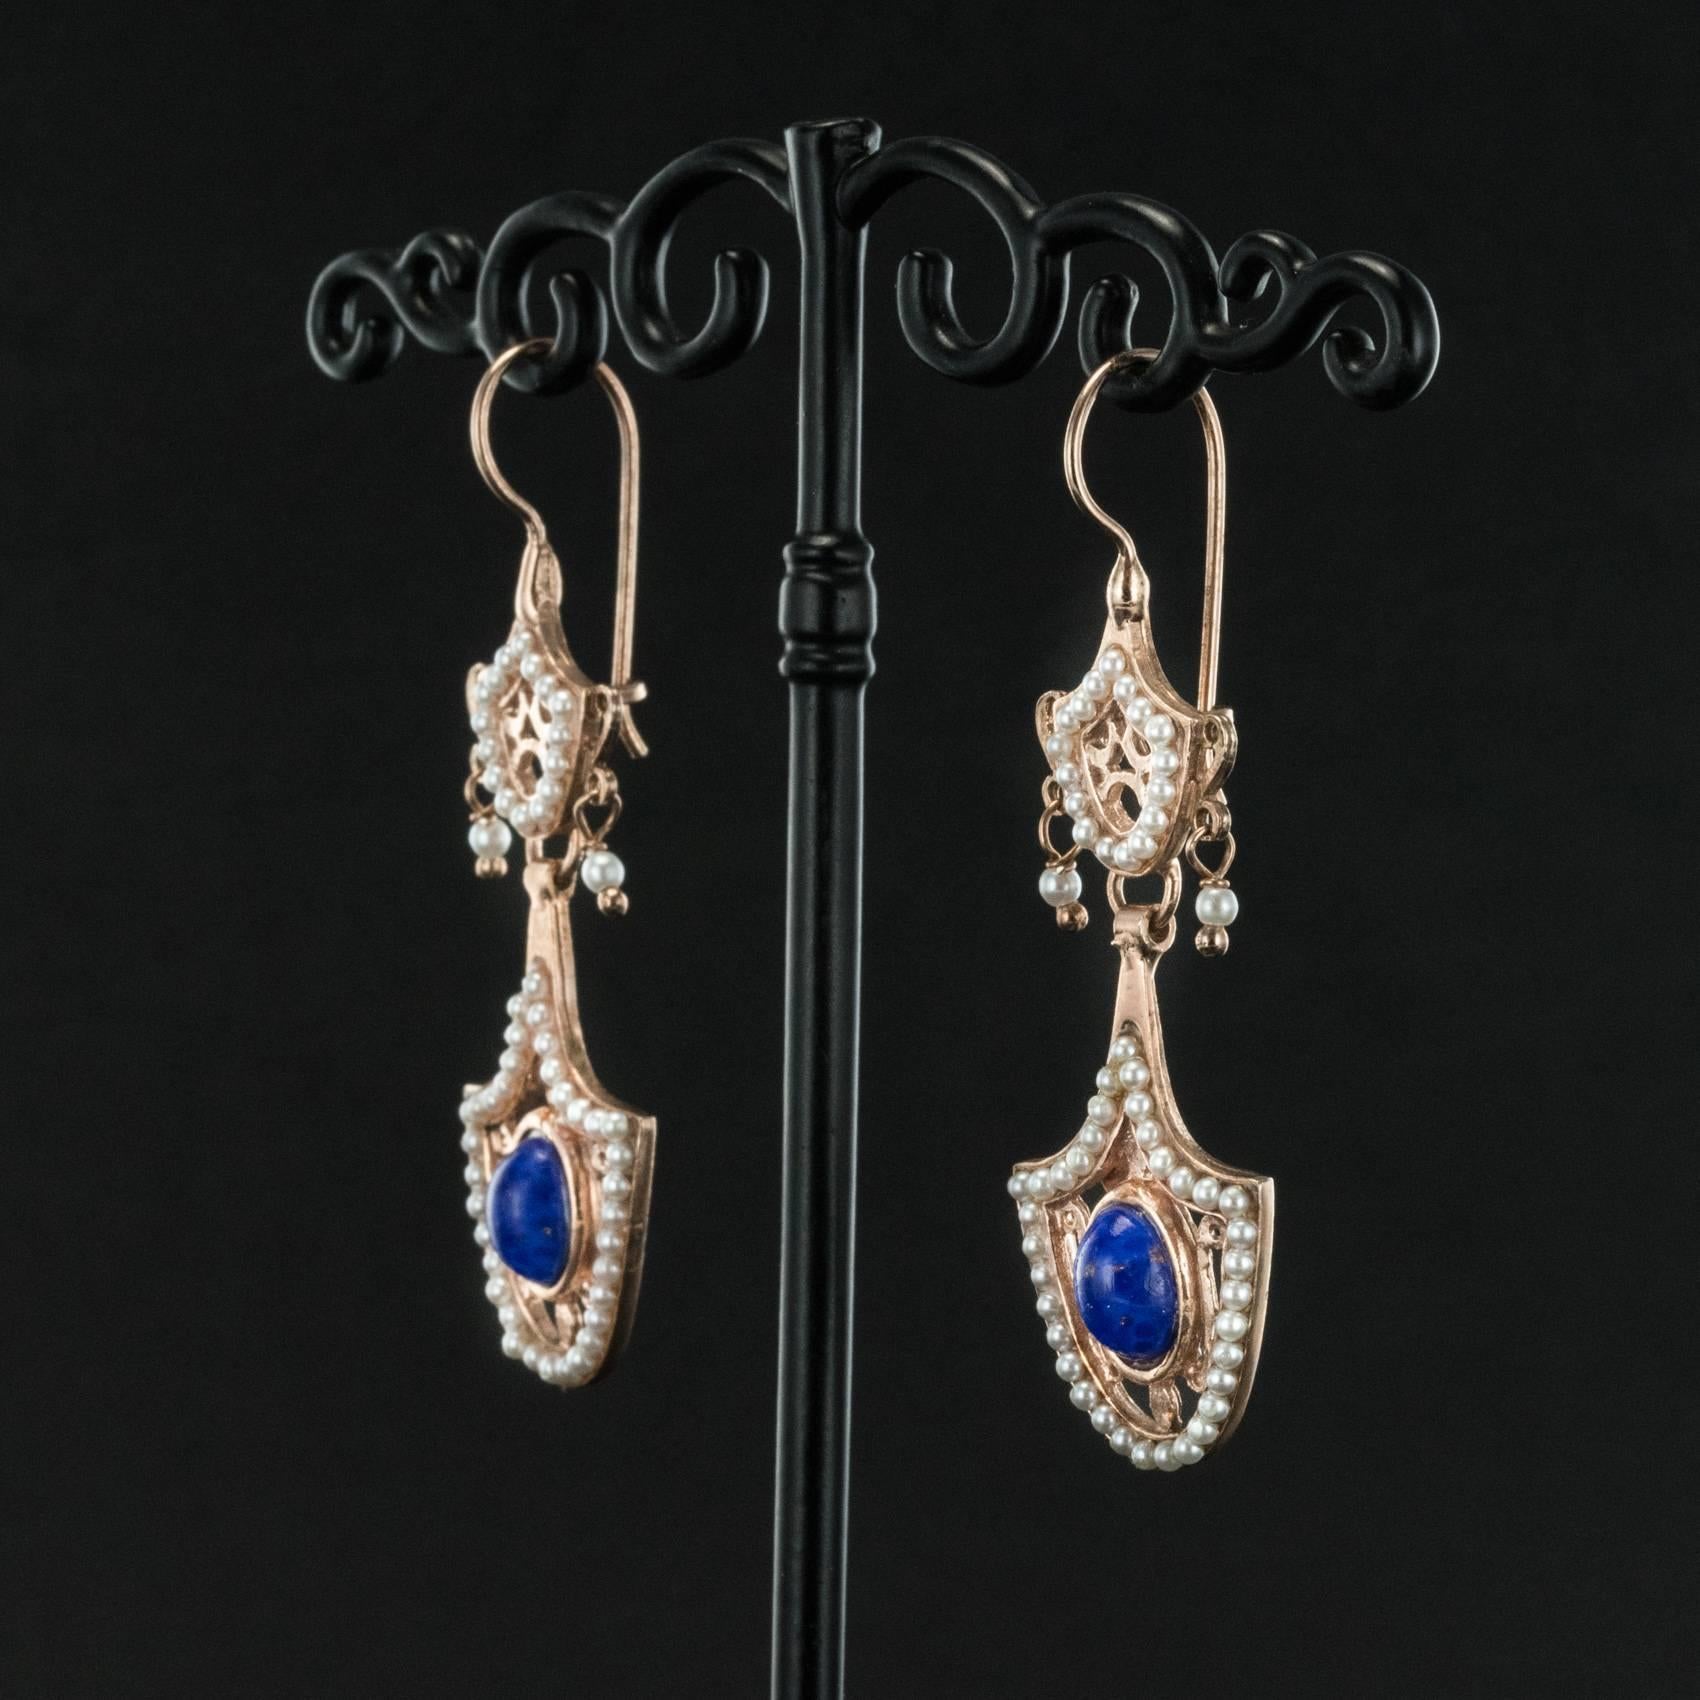 Baroque Italian Antique Style Vermeil Dangle Earrings